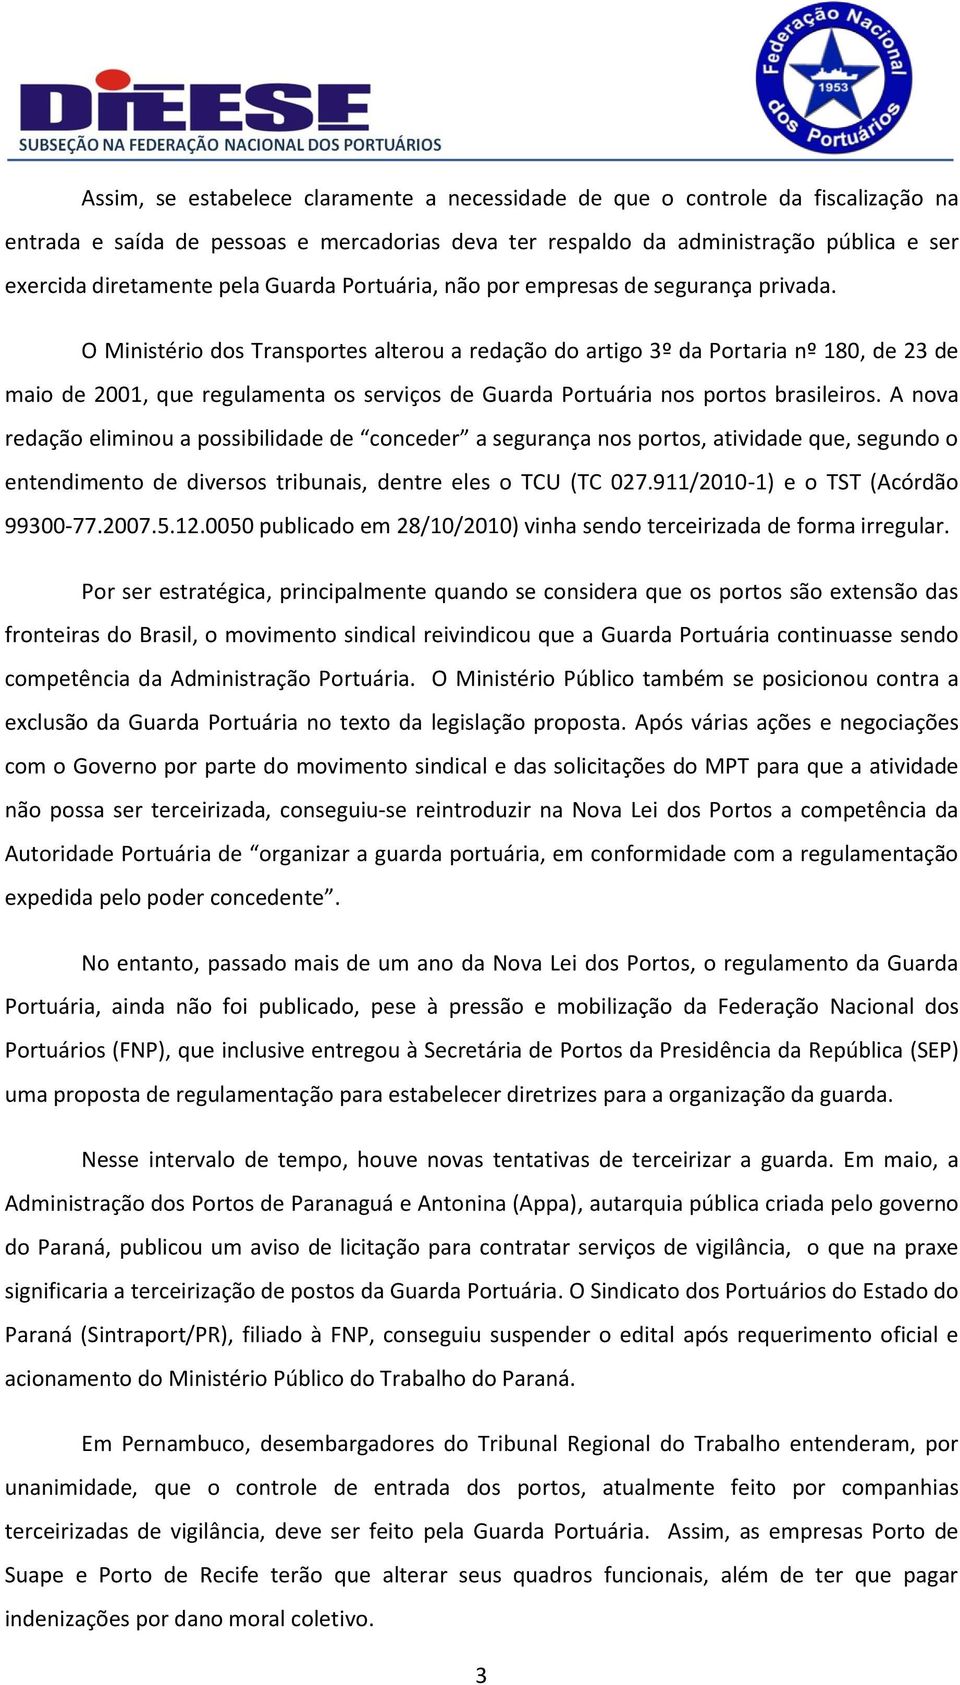 O Ministério dos Transportes alterou a redação do artigo 3º da Portaria nº 180, de 23 de maio de 2001, que regulamenta os serviços de Guarda Portuária nos portos brasileiros.